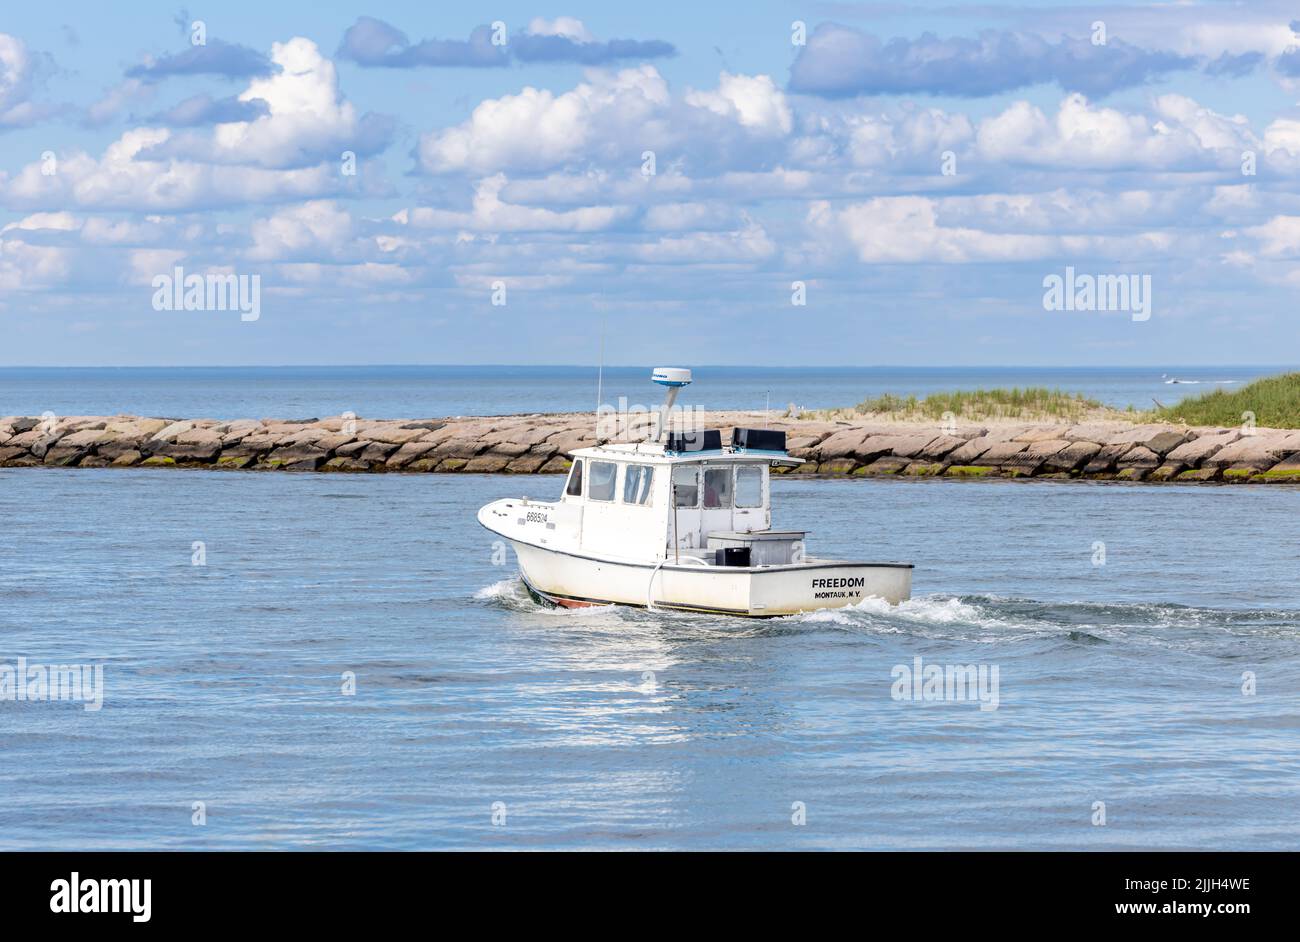 Fishing boat, Freedom leaving Montauk, NY Stock Photo